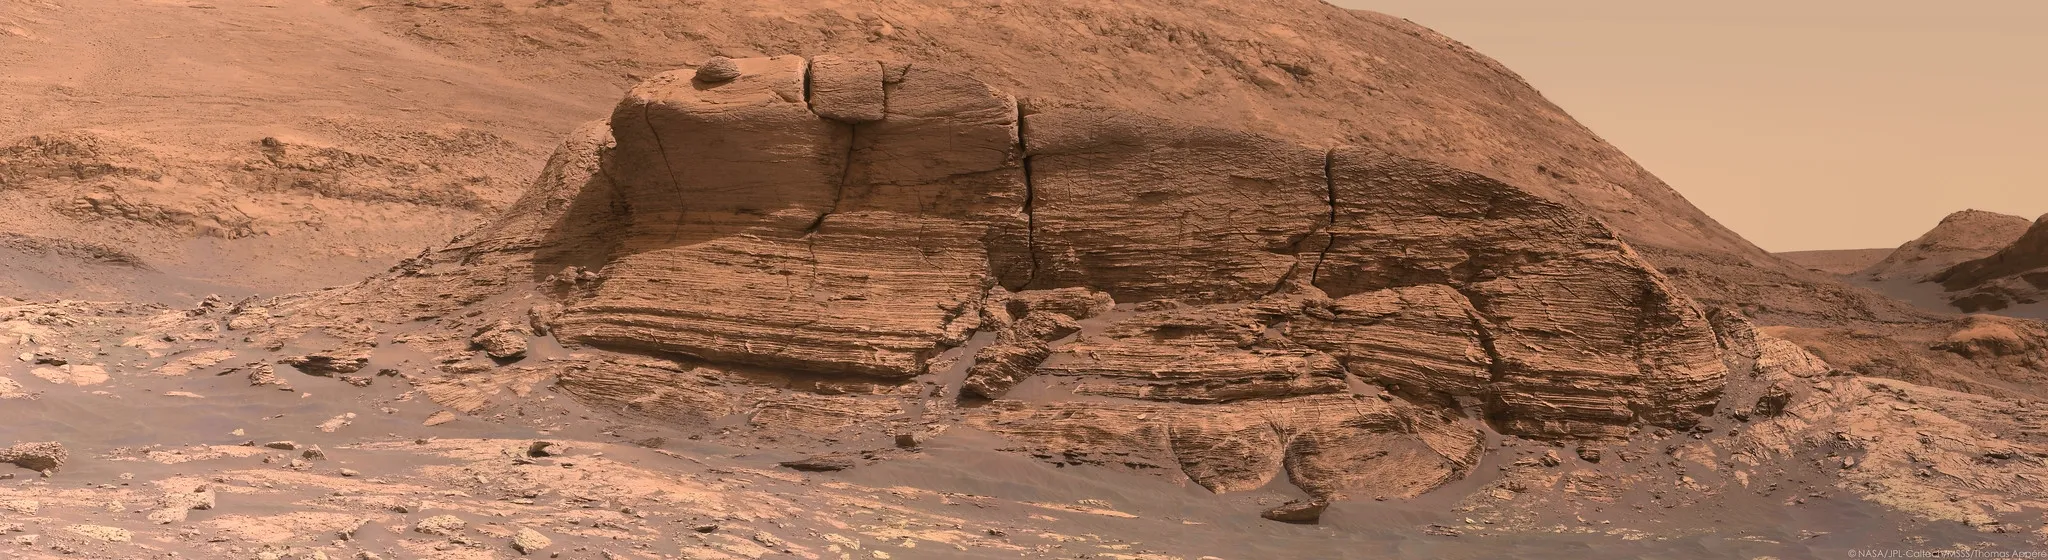 Снимки Марса с марсохода 2021